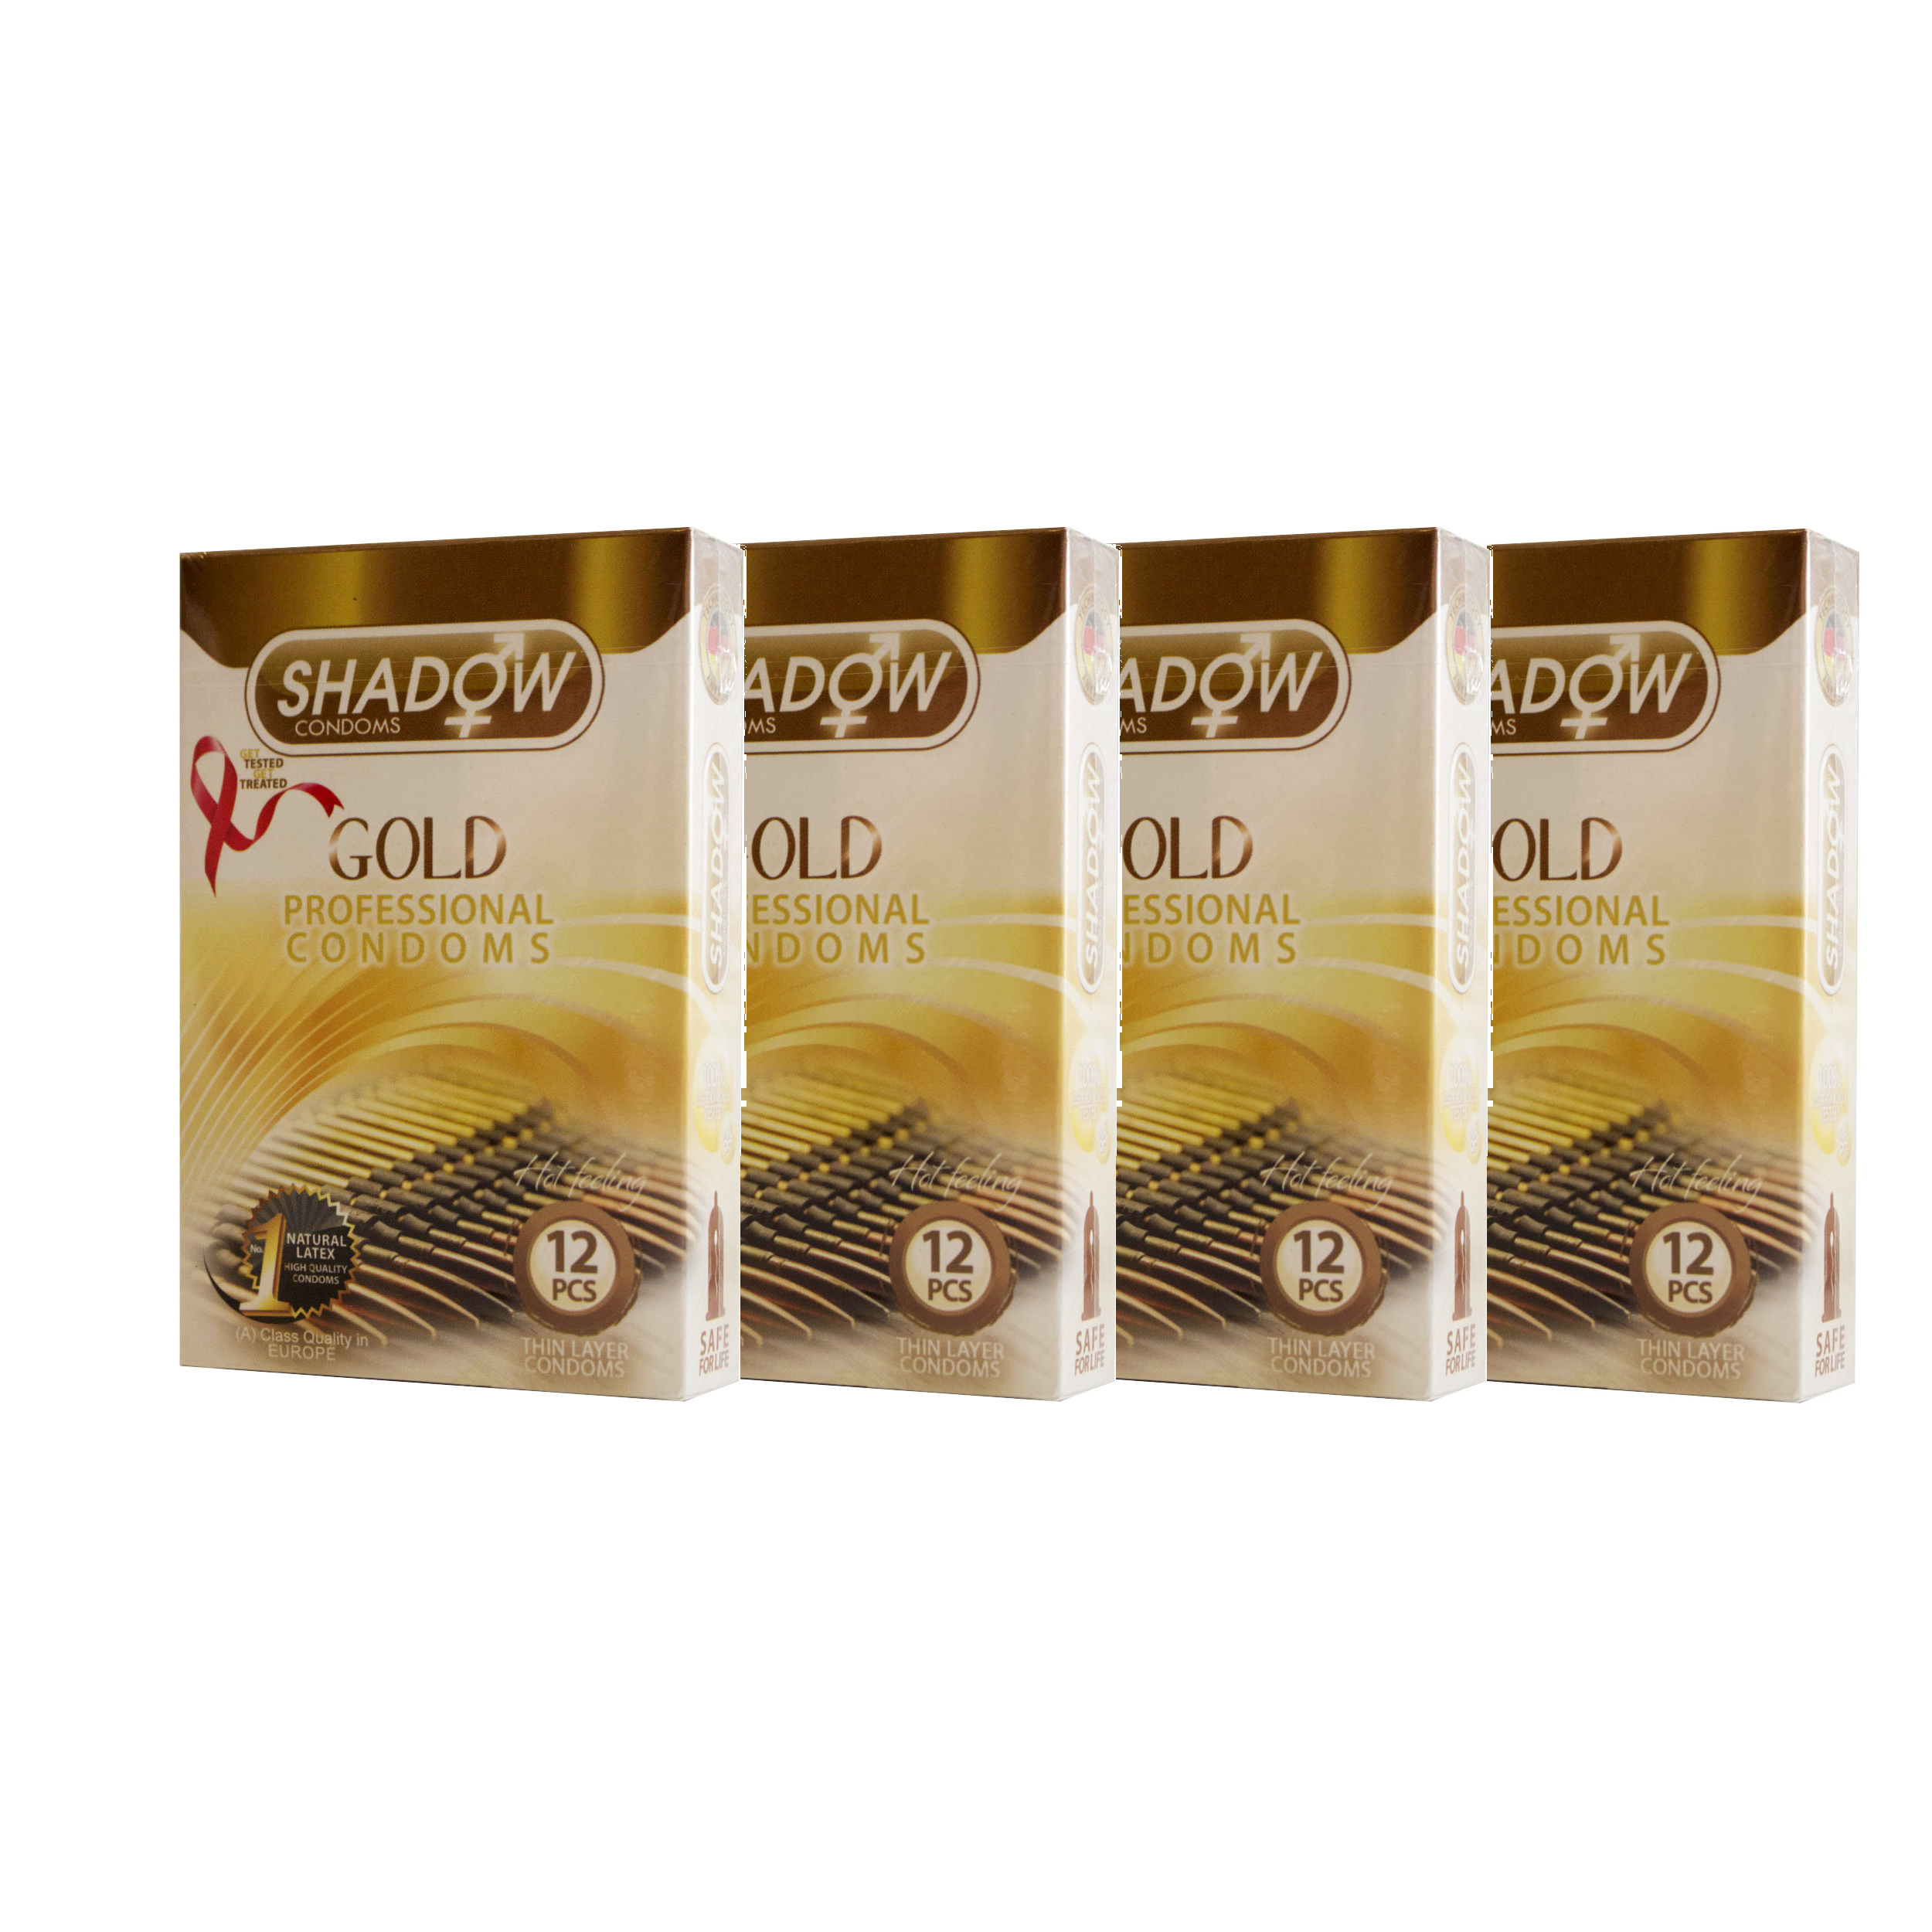 کاندوم شادو مدل Gold مجموعه 4 عددی